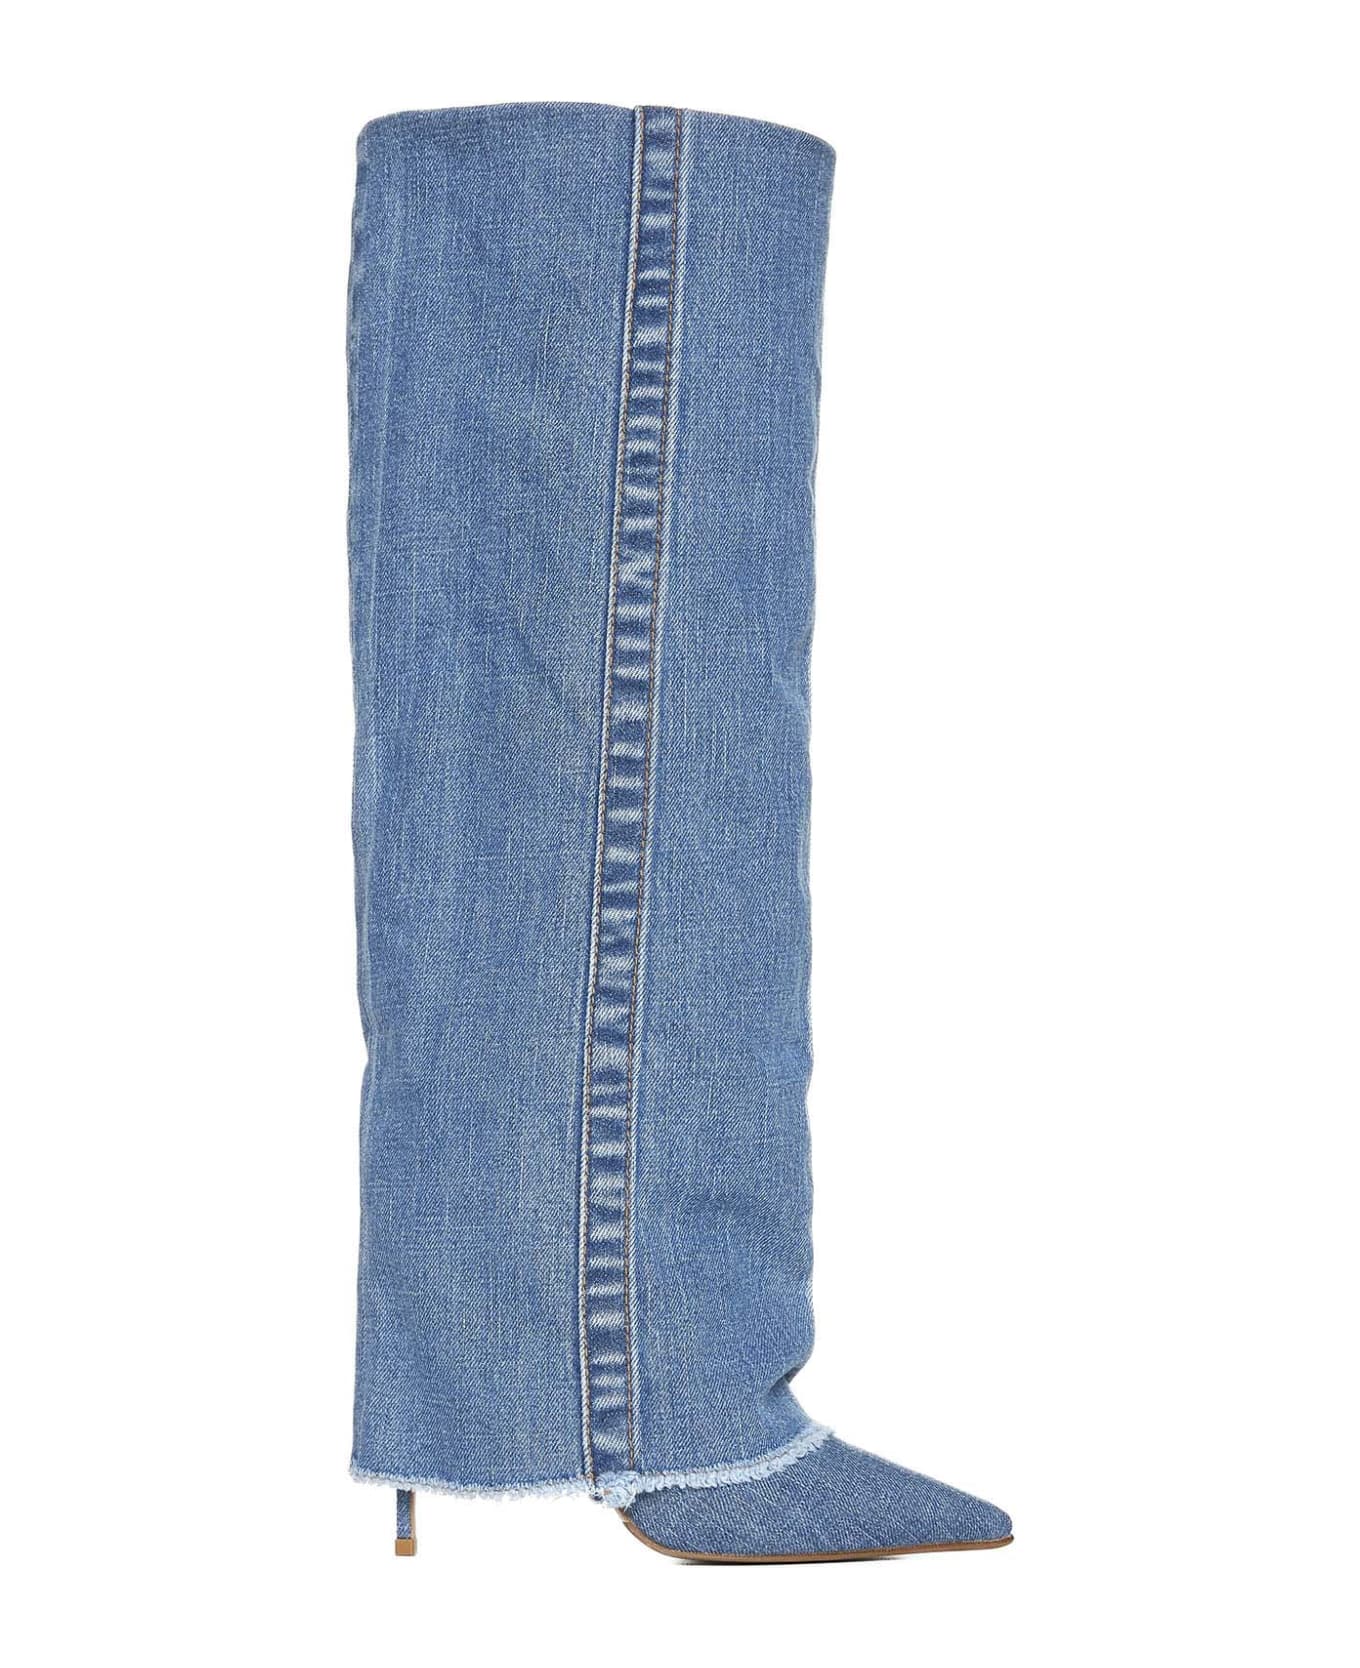 Le Silla Boots - Blue ブーツ